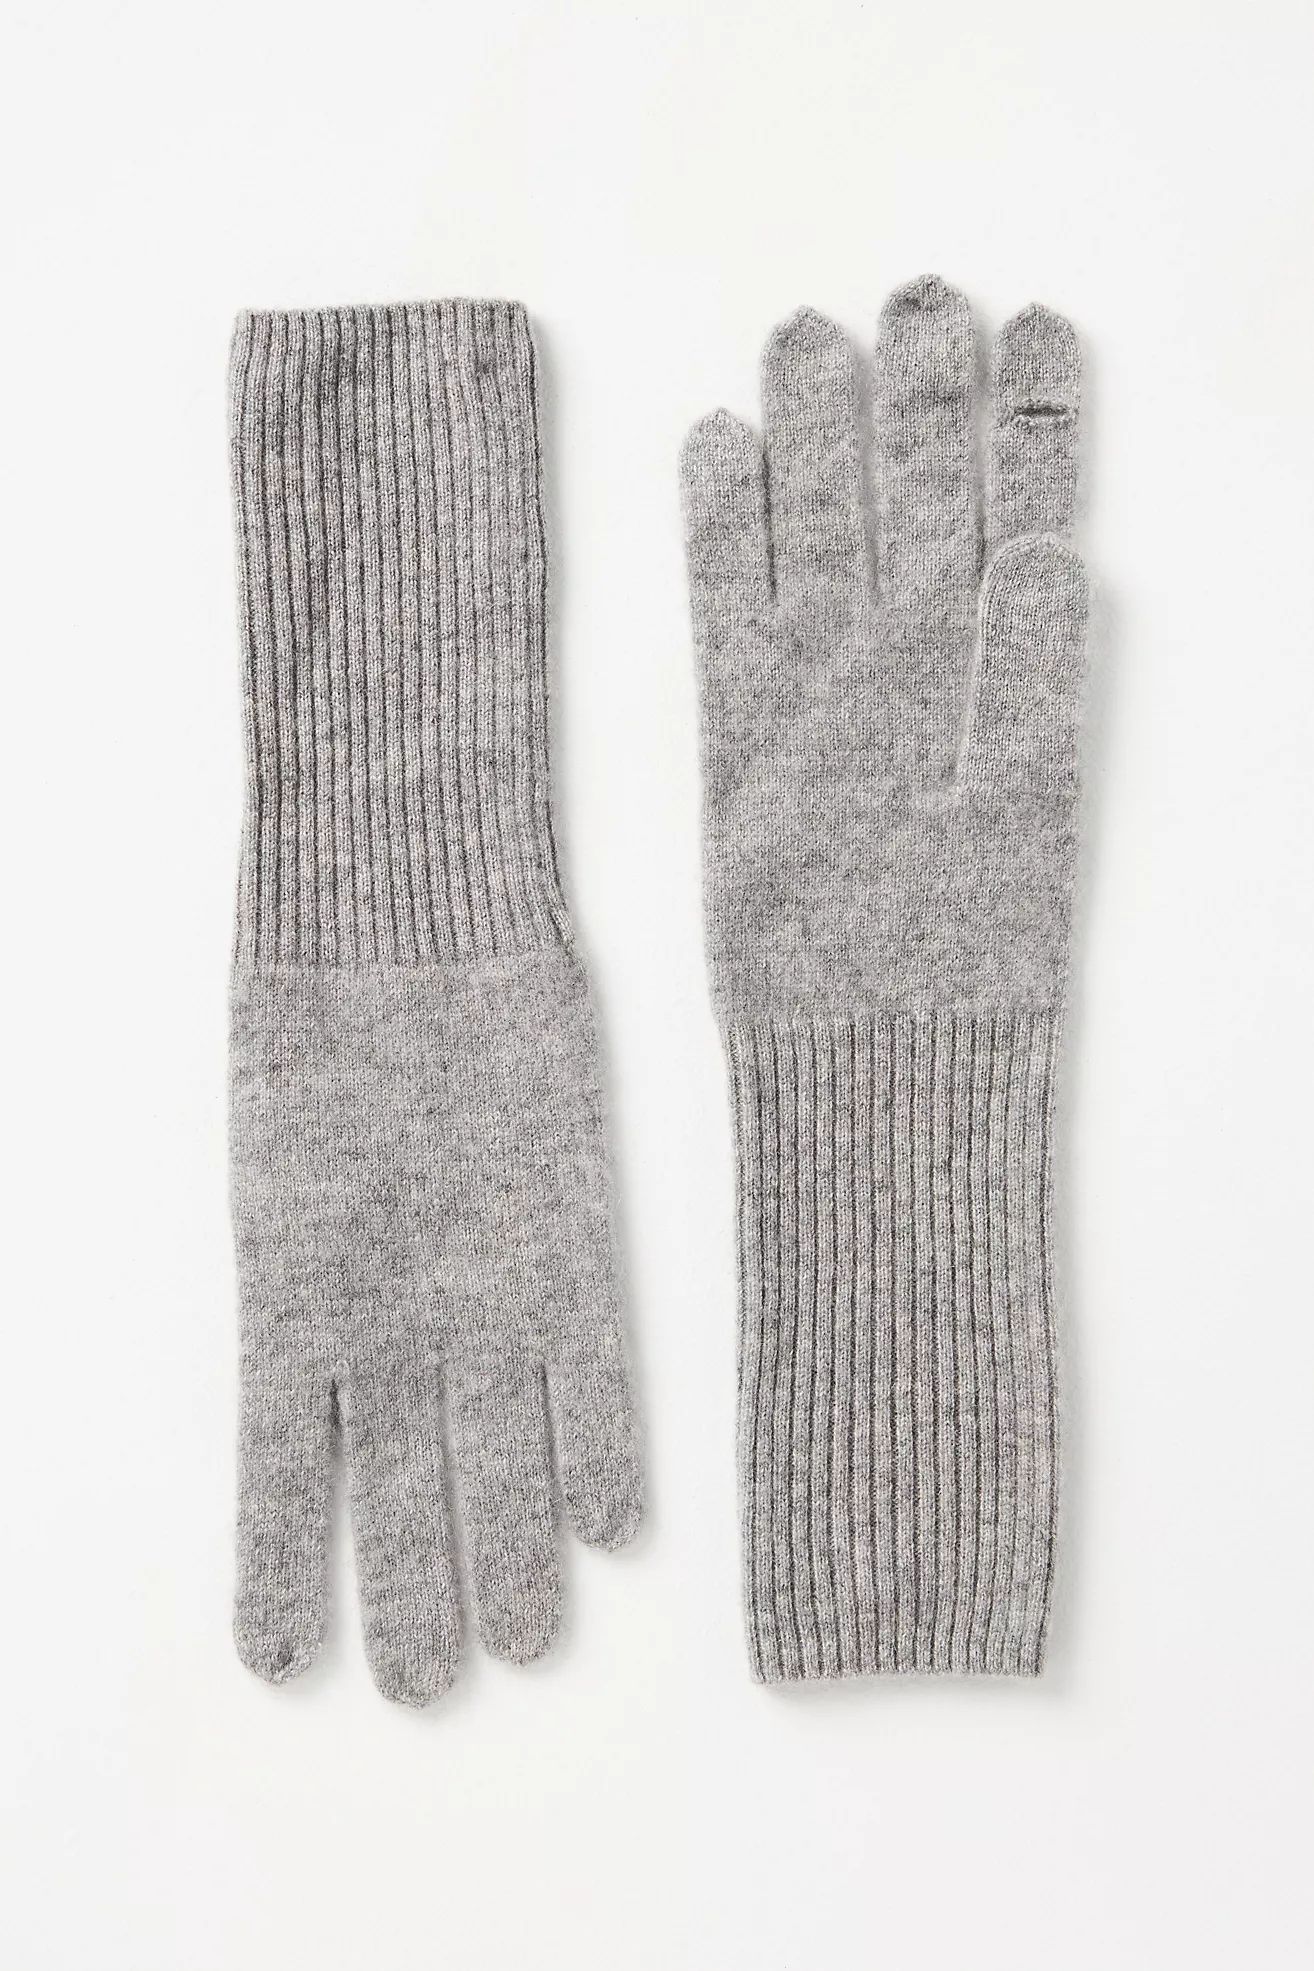 White + Warren Cashmere Gloves | Anthropologie (US)